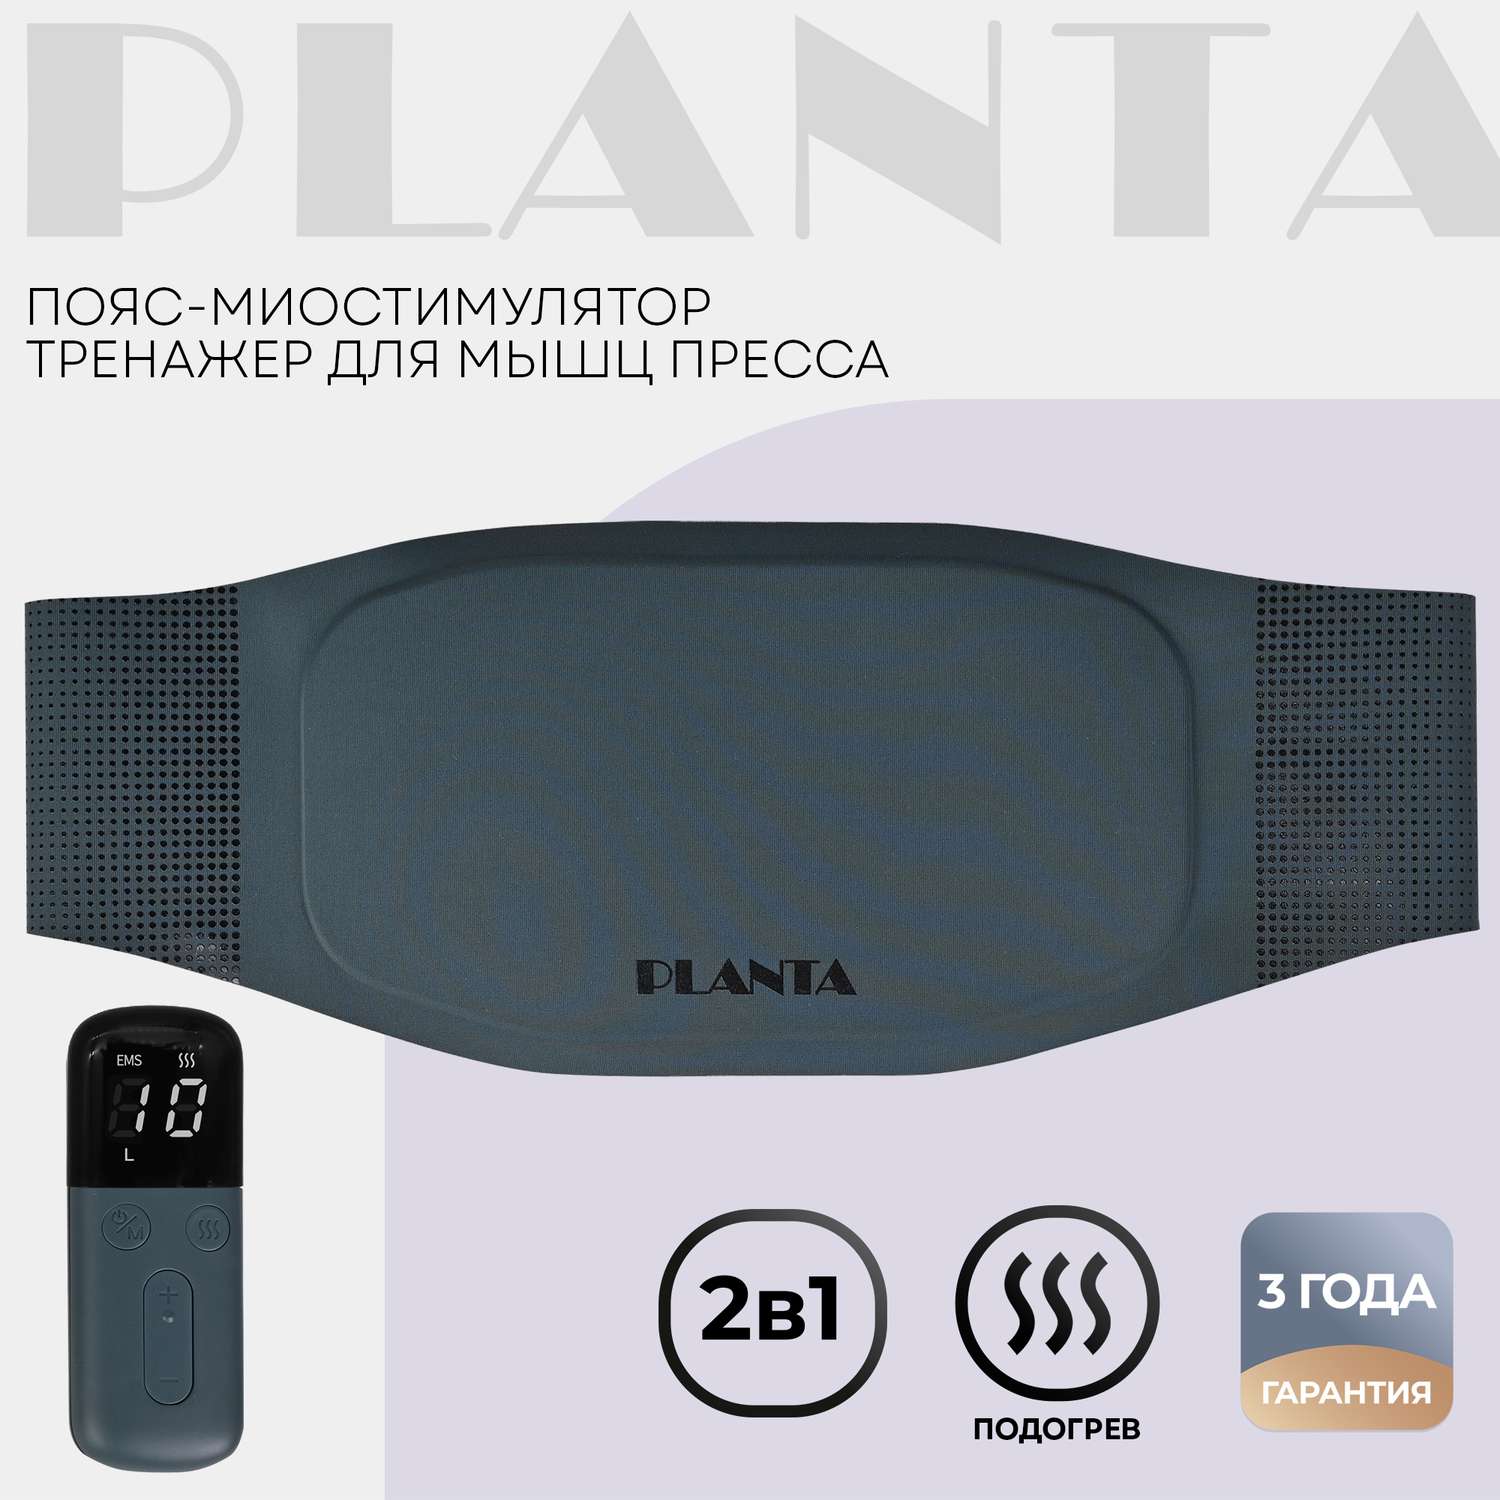 Пояс-миостимулятор для пресса Planta EMS-600 тренажер мышц пресса с подогревом ультратонкий - фото 1